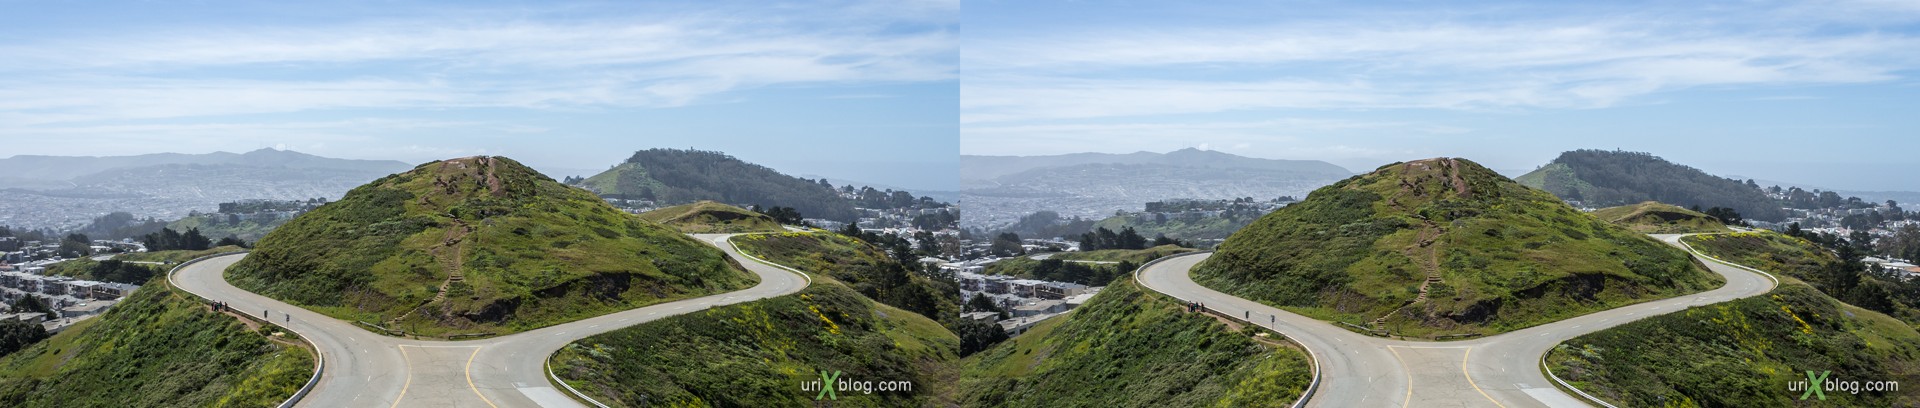 2013, Твин Пикс, Сан-Франциско, США, 3D, перекрёстные стереопары, стерео, стереопара, стереопары